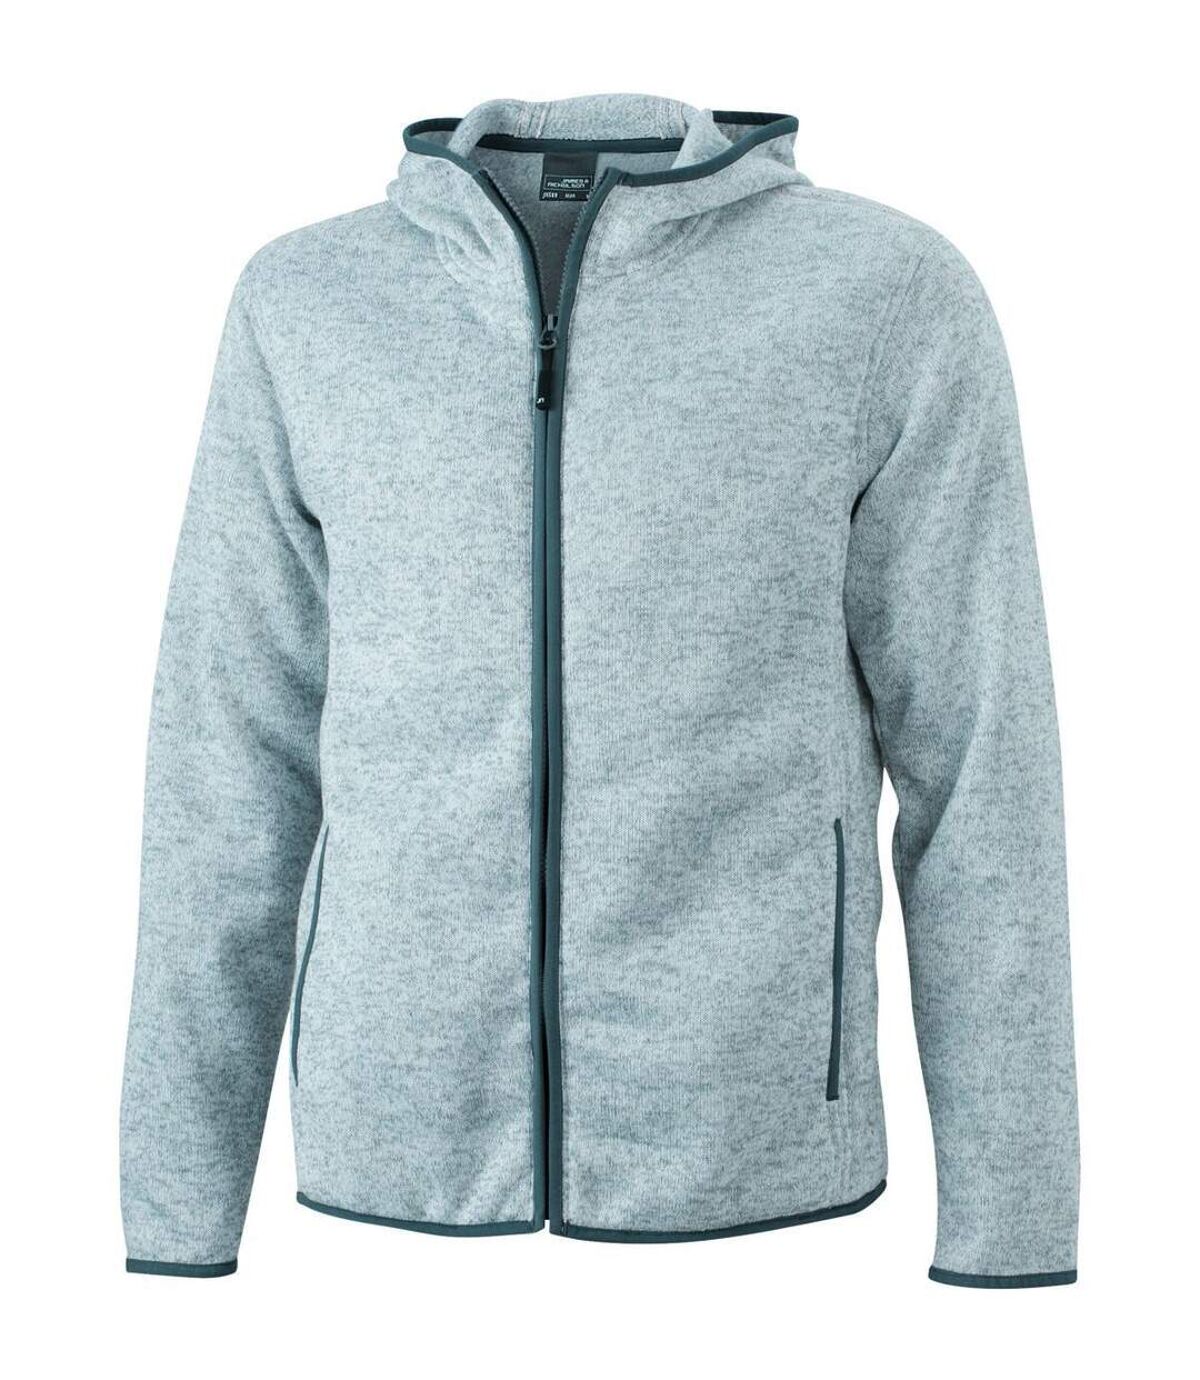 Veste tricot polaire à capuche HOMME- JN589 - gris clair chiné